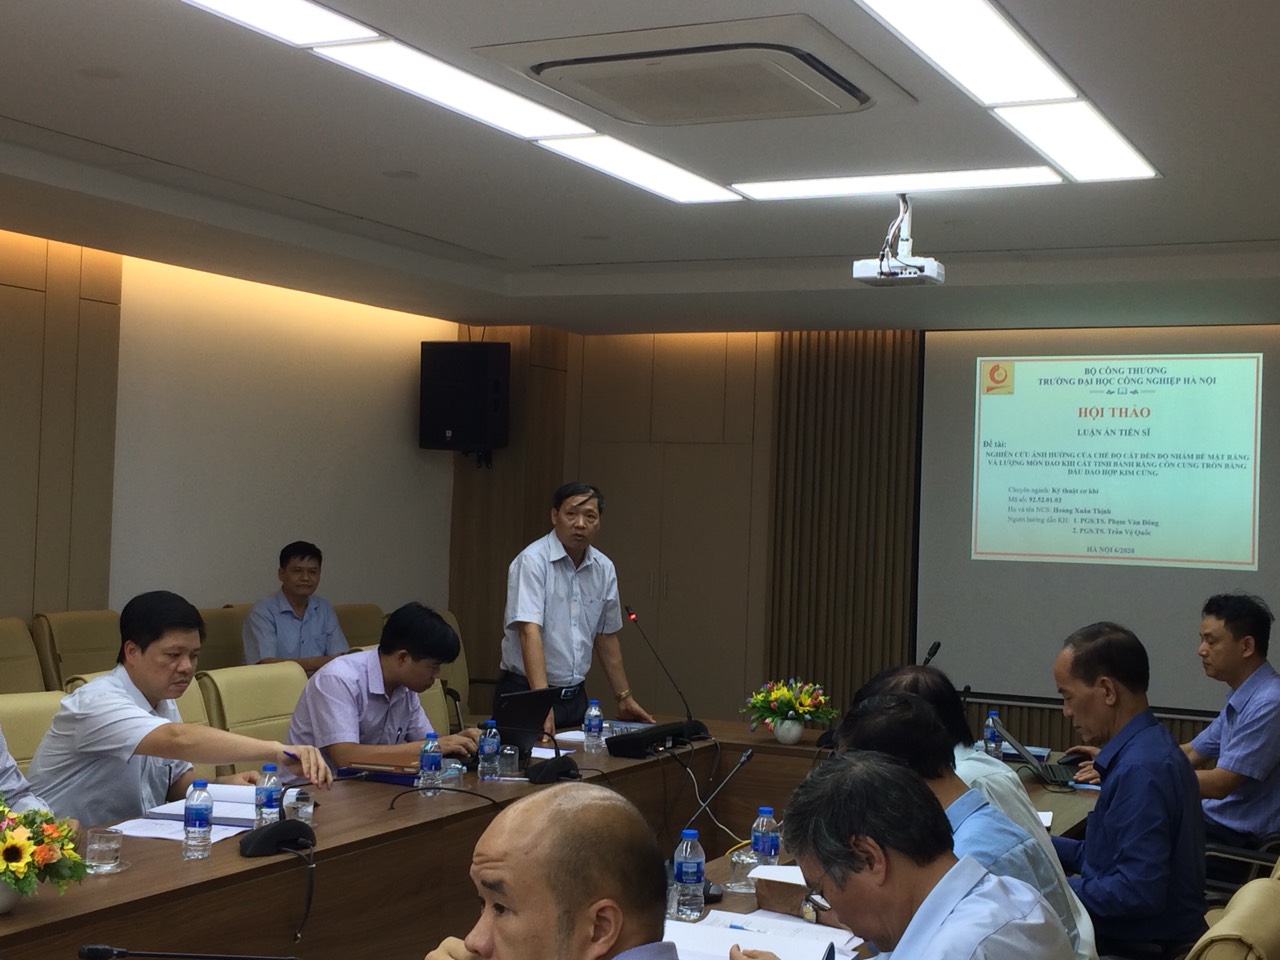 Hội thảo luận án Tiến sĩ cho NCS Hoàng Xuân Thịnh - Chuyên ngành Kỹ thuật cơ khí